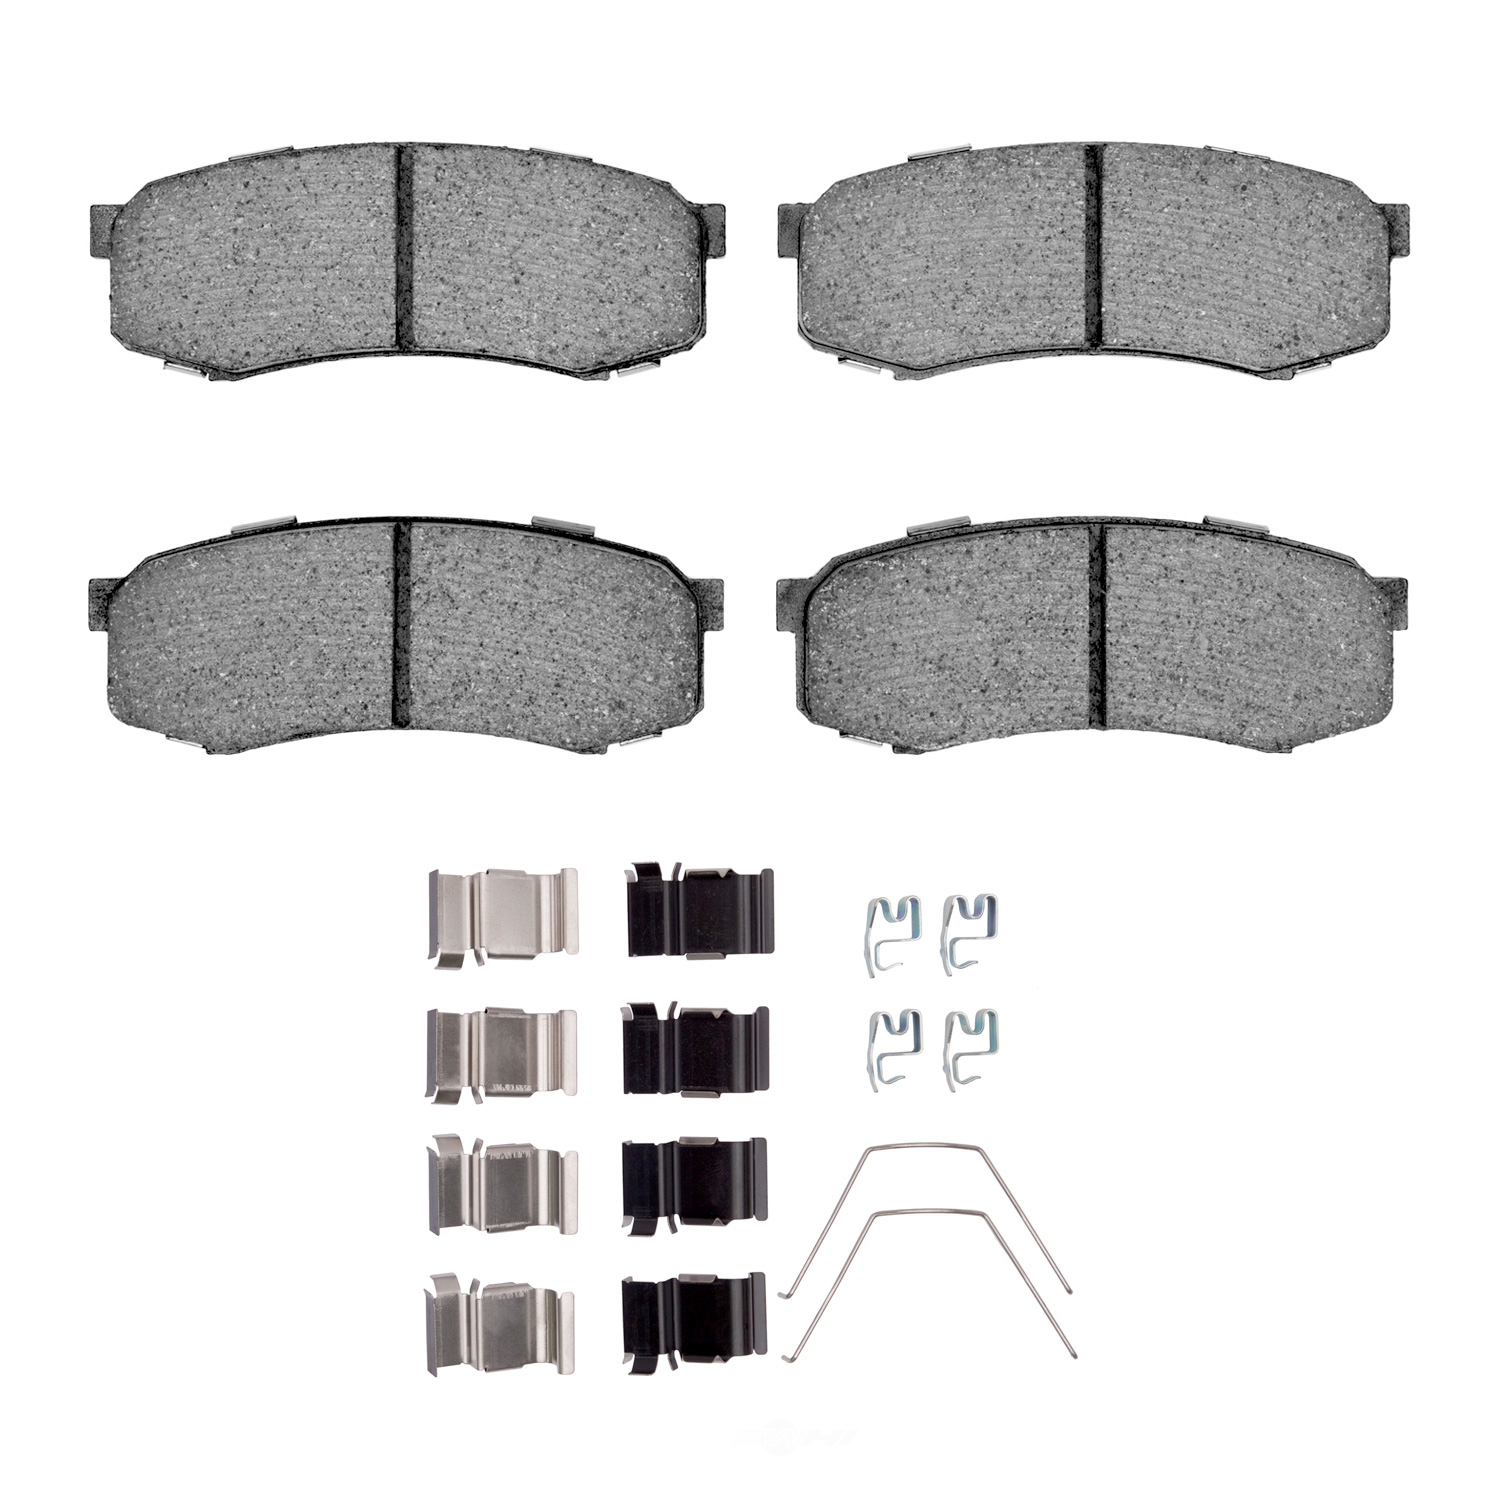 DFC - DFC 3000 Ceramic Brake Pads and Hardware Kit (Rear) - DF1 1310-0606-01